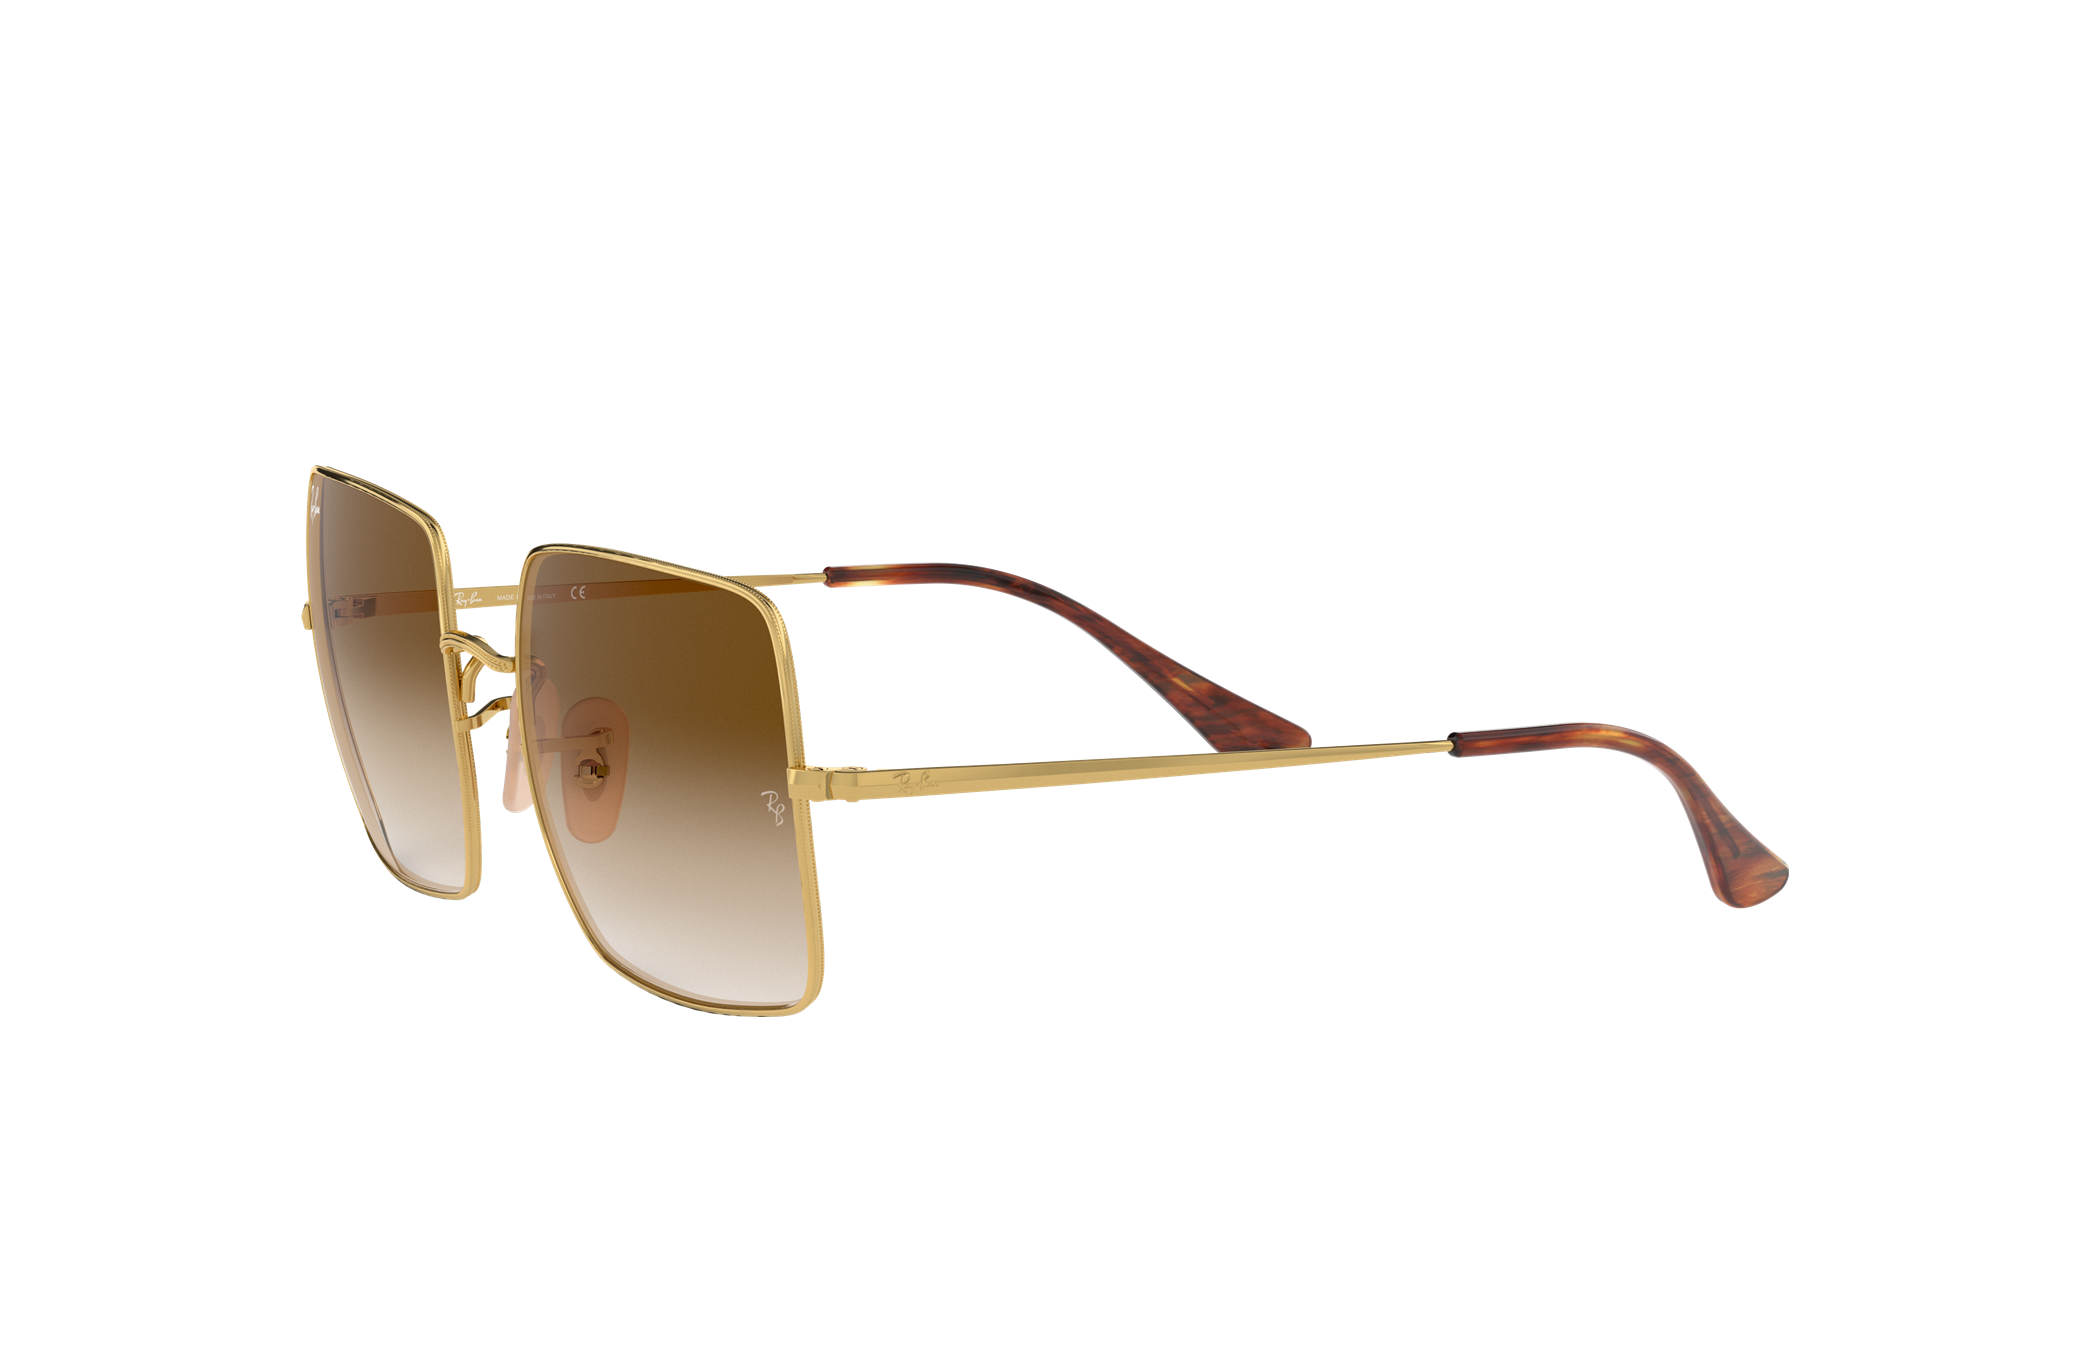 Best Big & Oversized Sunglasses For Girls & Women - Soigné